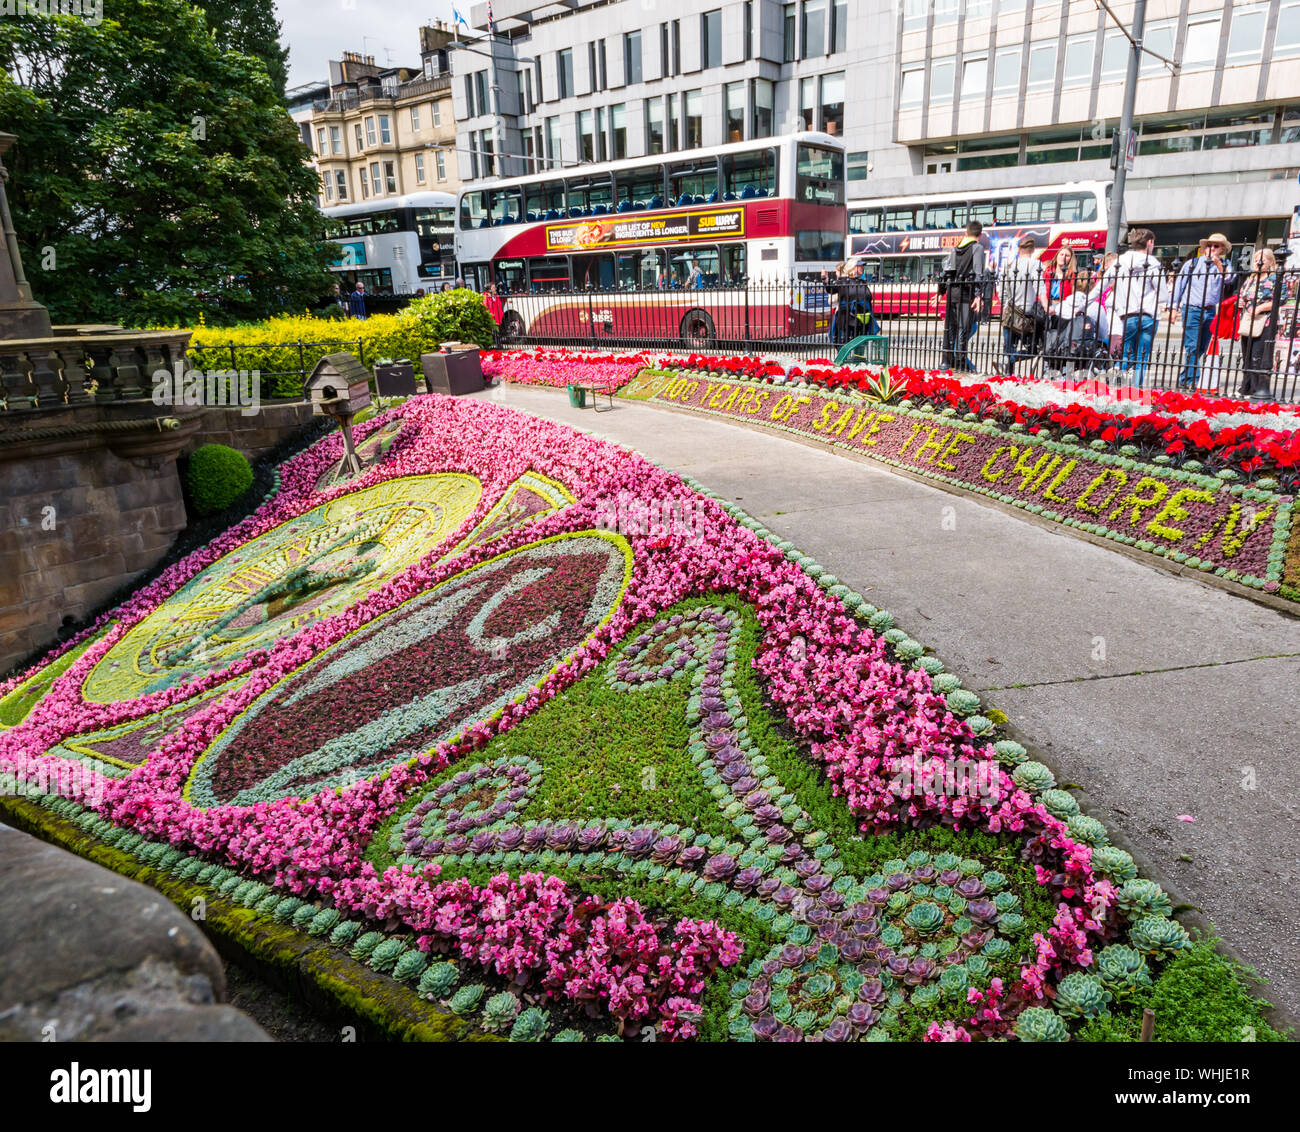 Historique célèbre horloge florale la plus ancienne fête du centenaire de Save the Children, Princes Street Gardens, Édimbourg, Écosse, Royaume-Uni en 2019 Banque D'Images